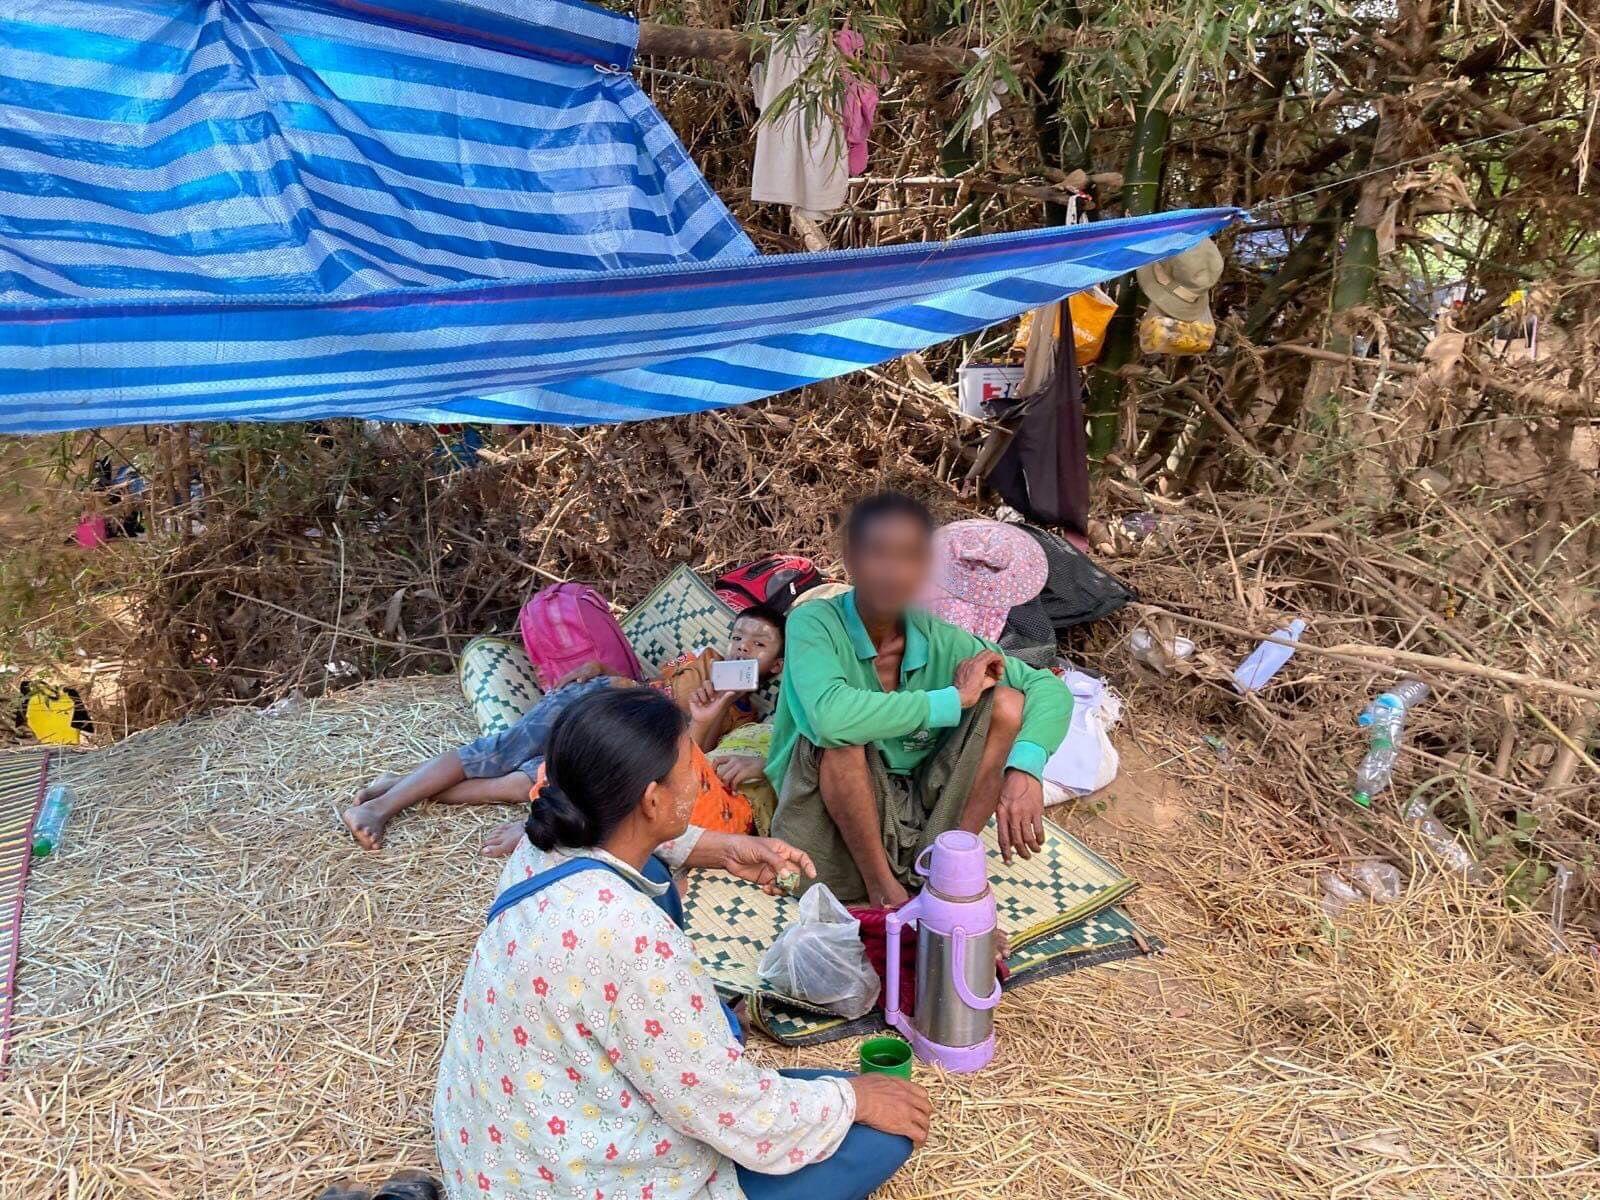 WLB visited refugees in Burmese Border